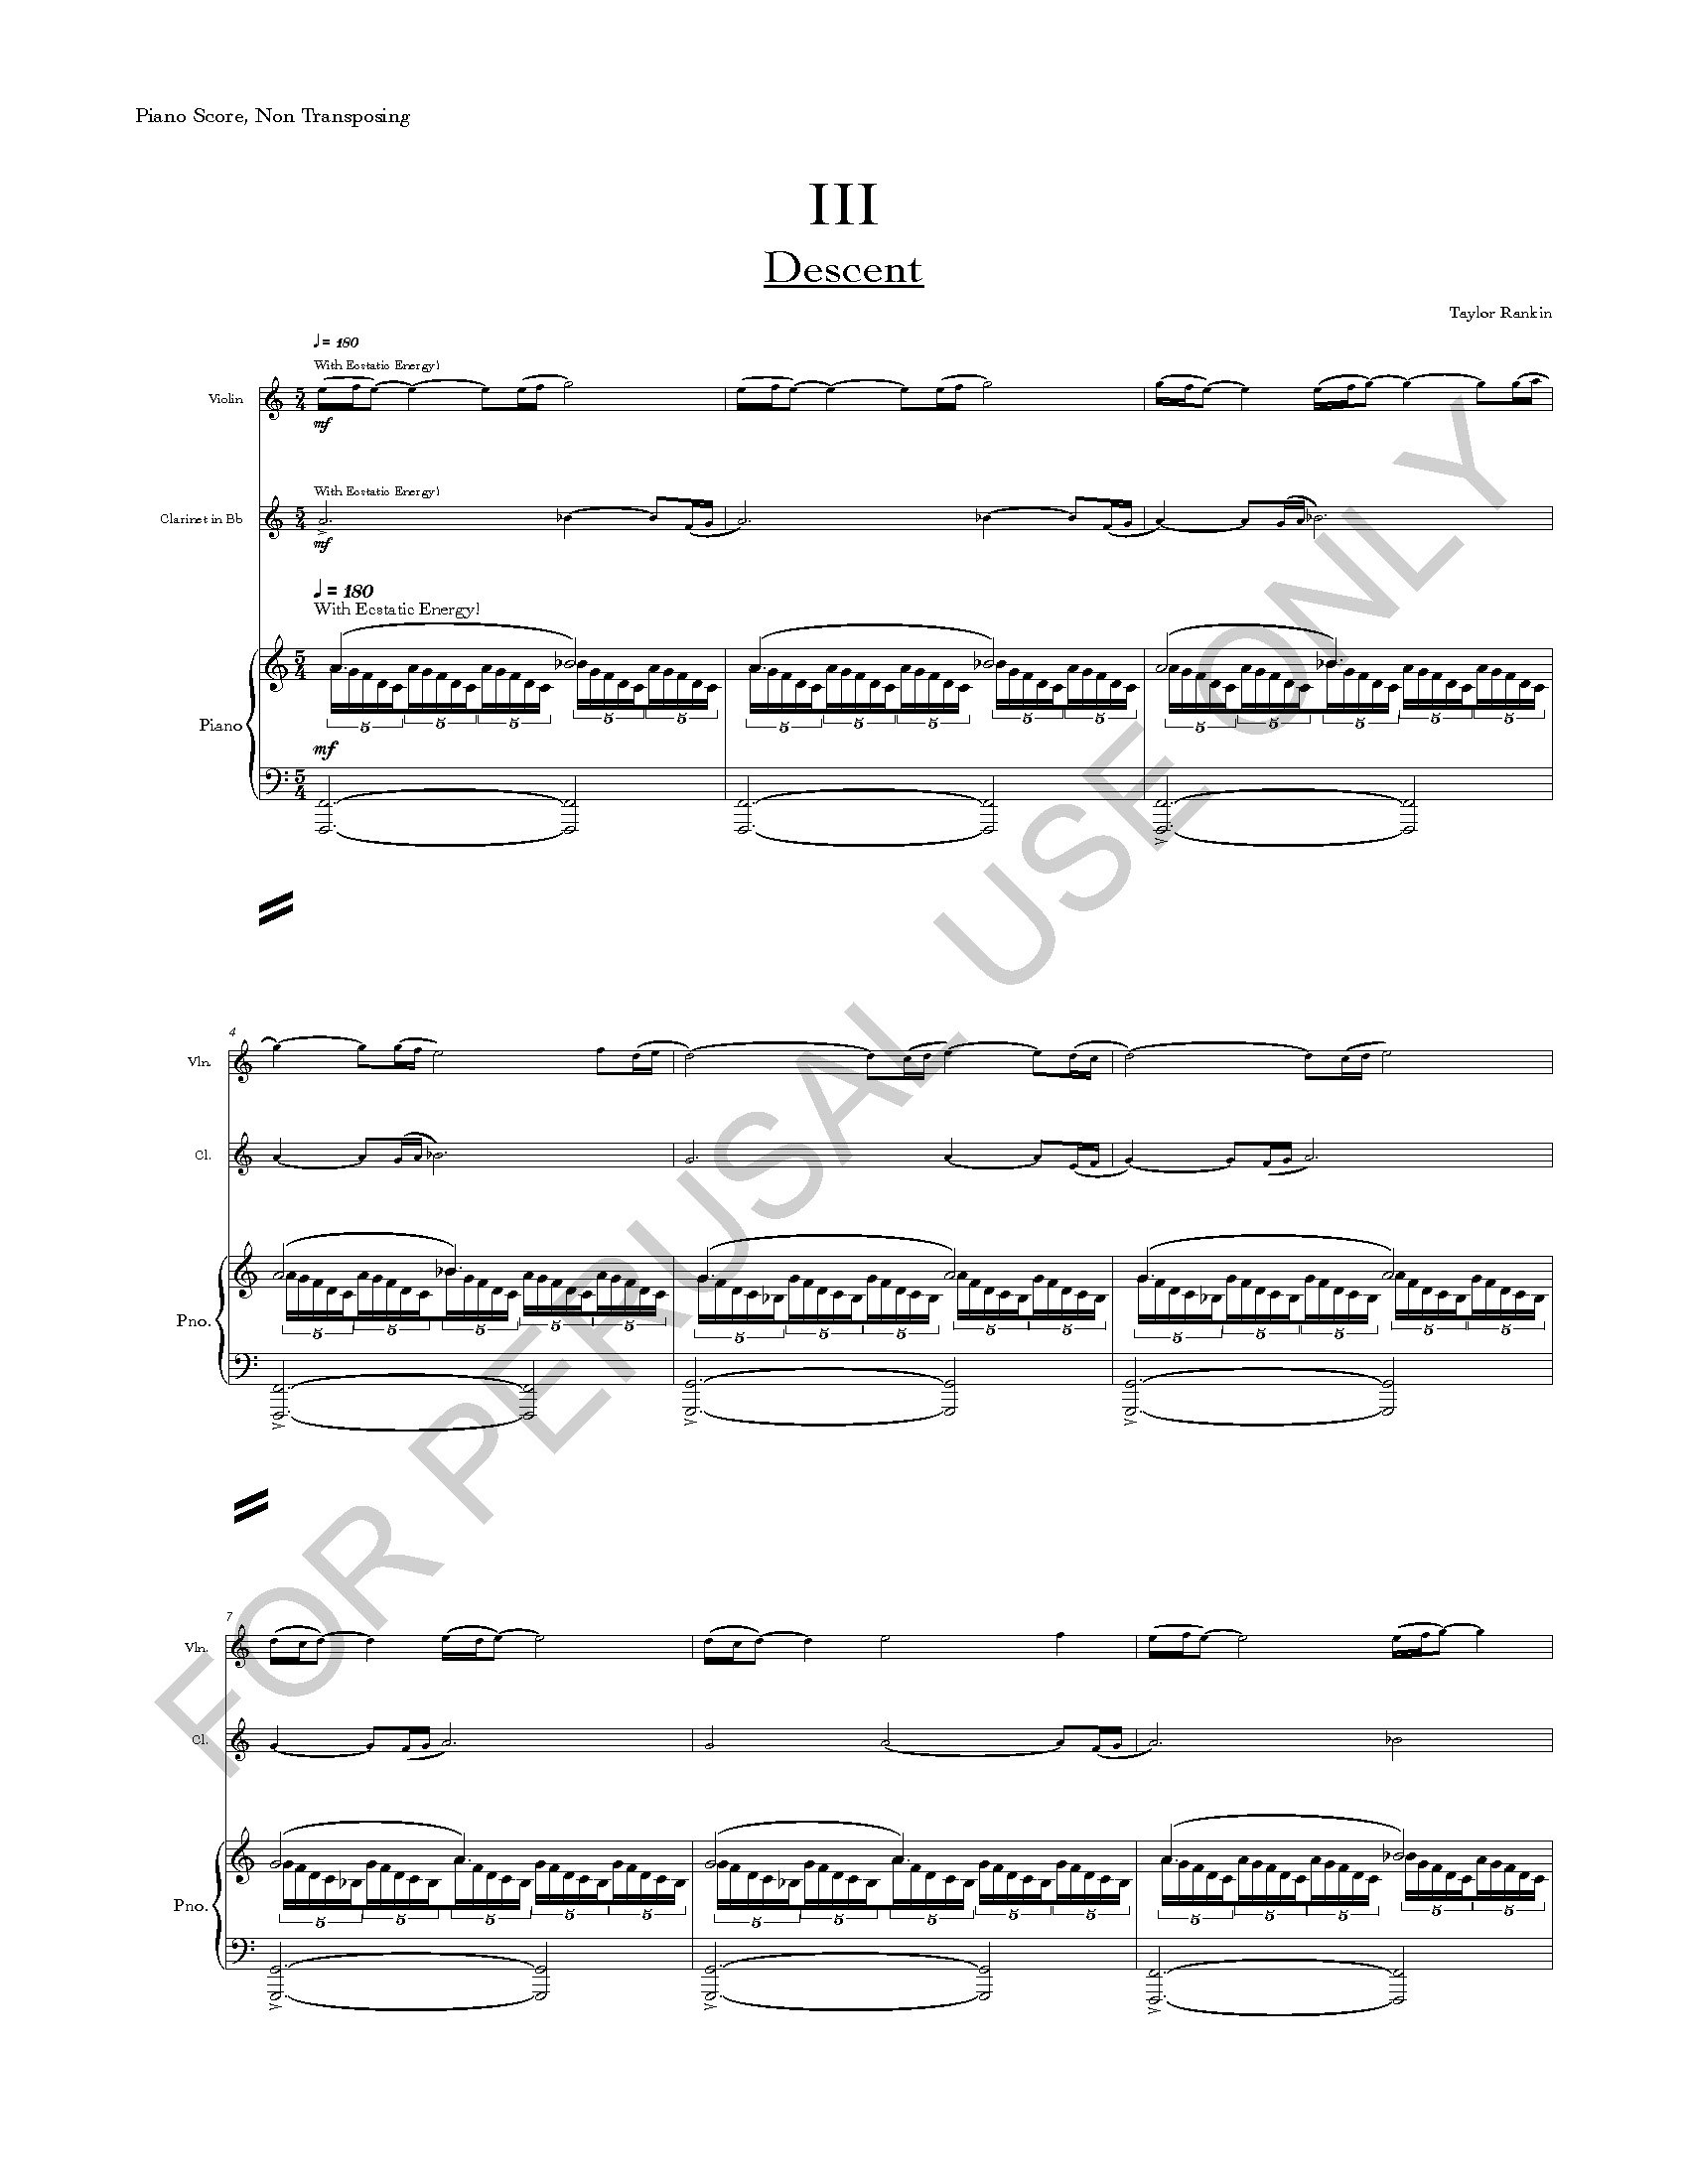 RANKIN - I. ASCENT - PIANO SCORE_Page_12.jpg